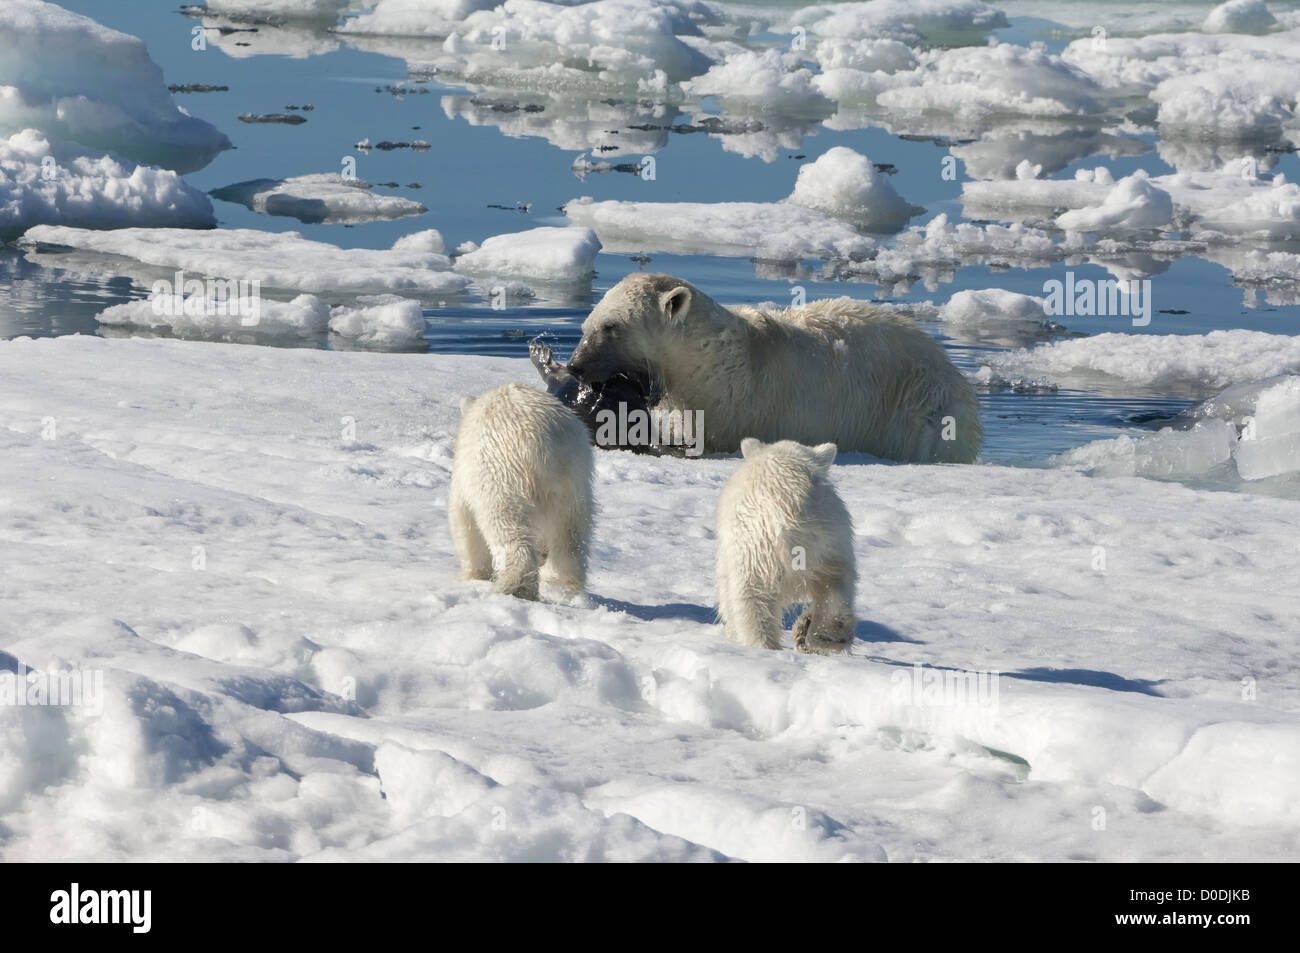 Femmina orso polare (Ursus maritimus) la caccia di inanellare una guarnizione, arcipelago delle Svalbard, il Mare di Barents, Norvegia Foto Stock